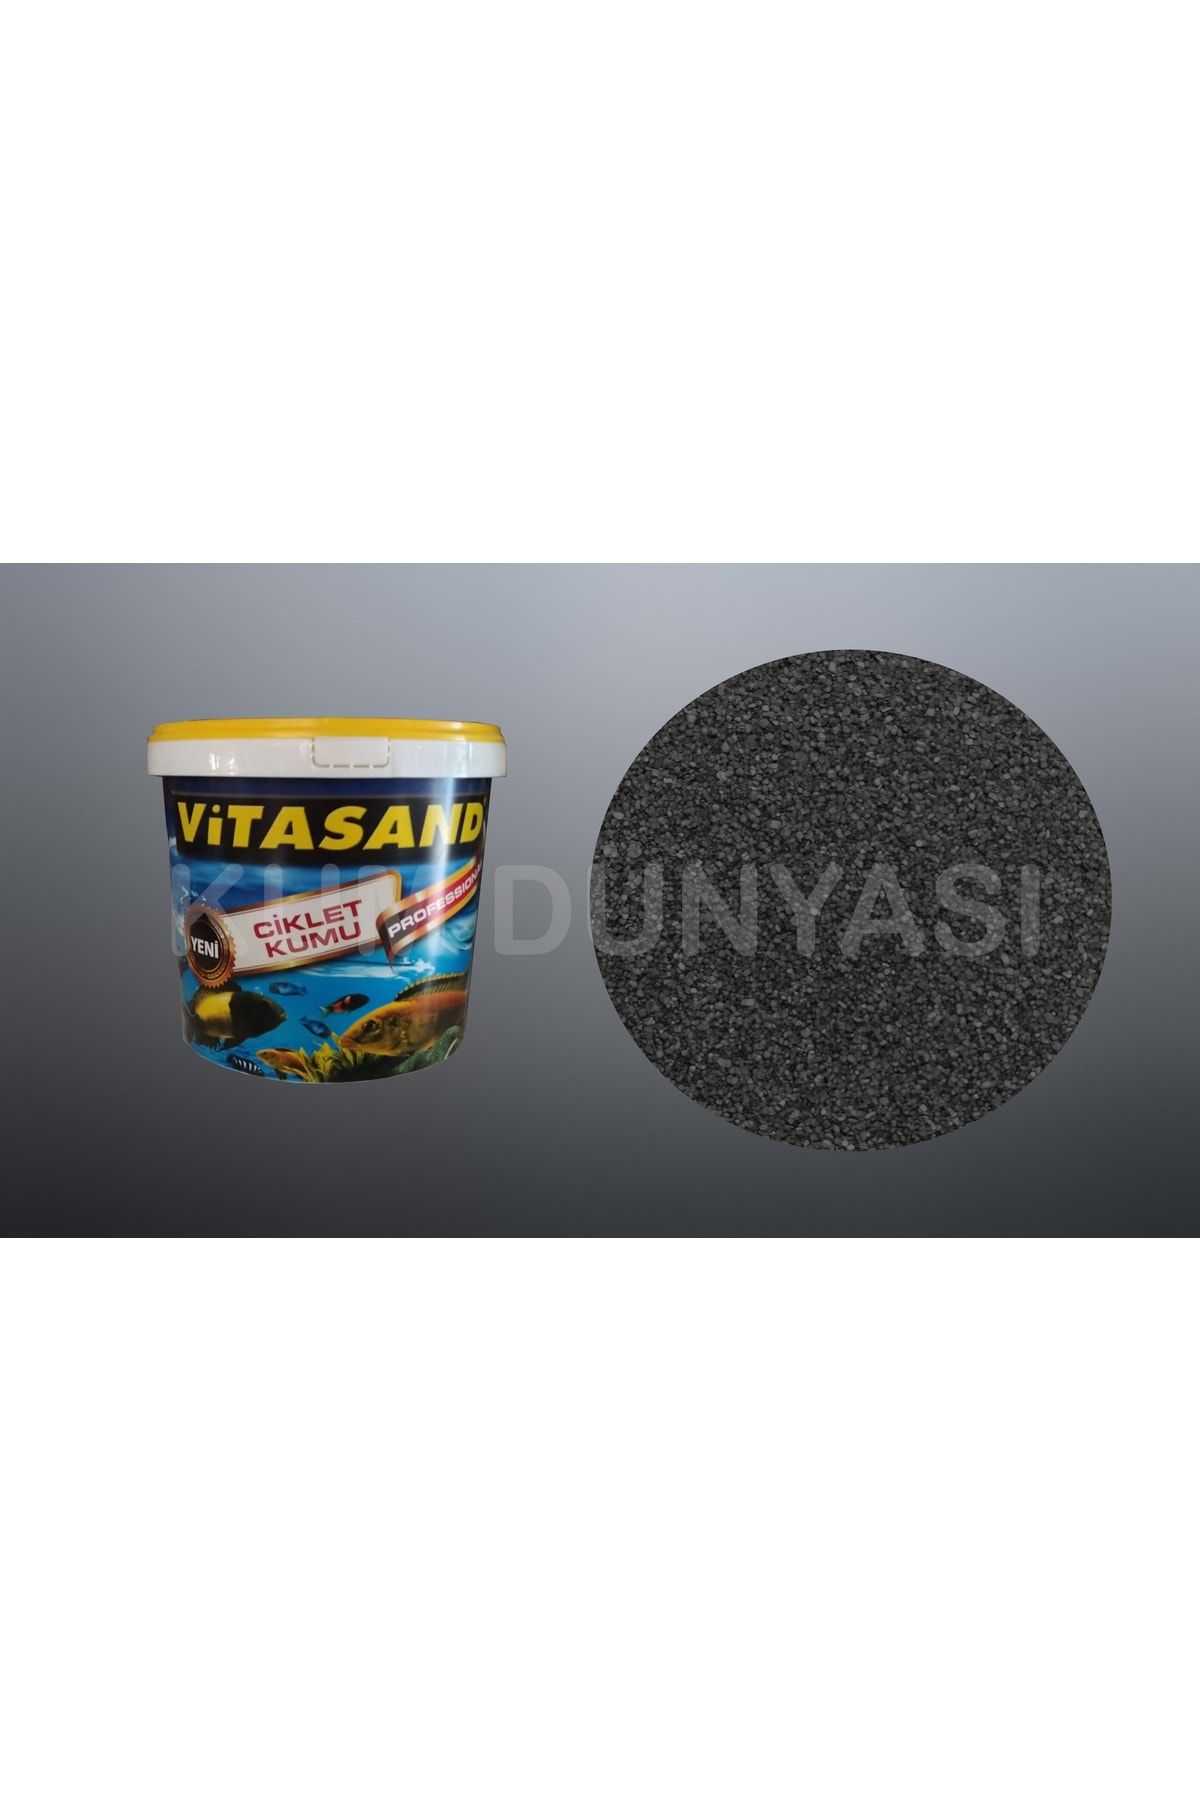 Vitasand Pro-117 0,7mm Akvaryum Kumu Parlak Siyah Kum 20kg